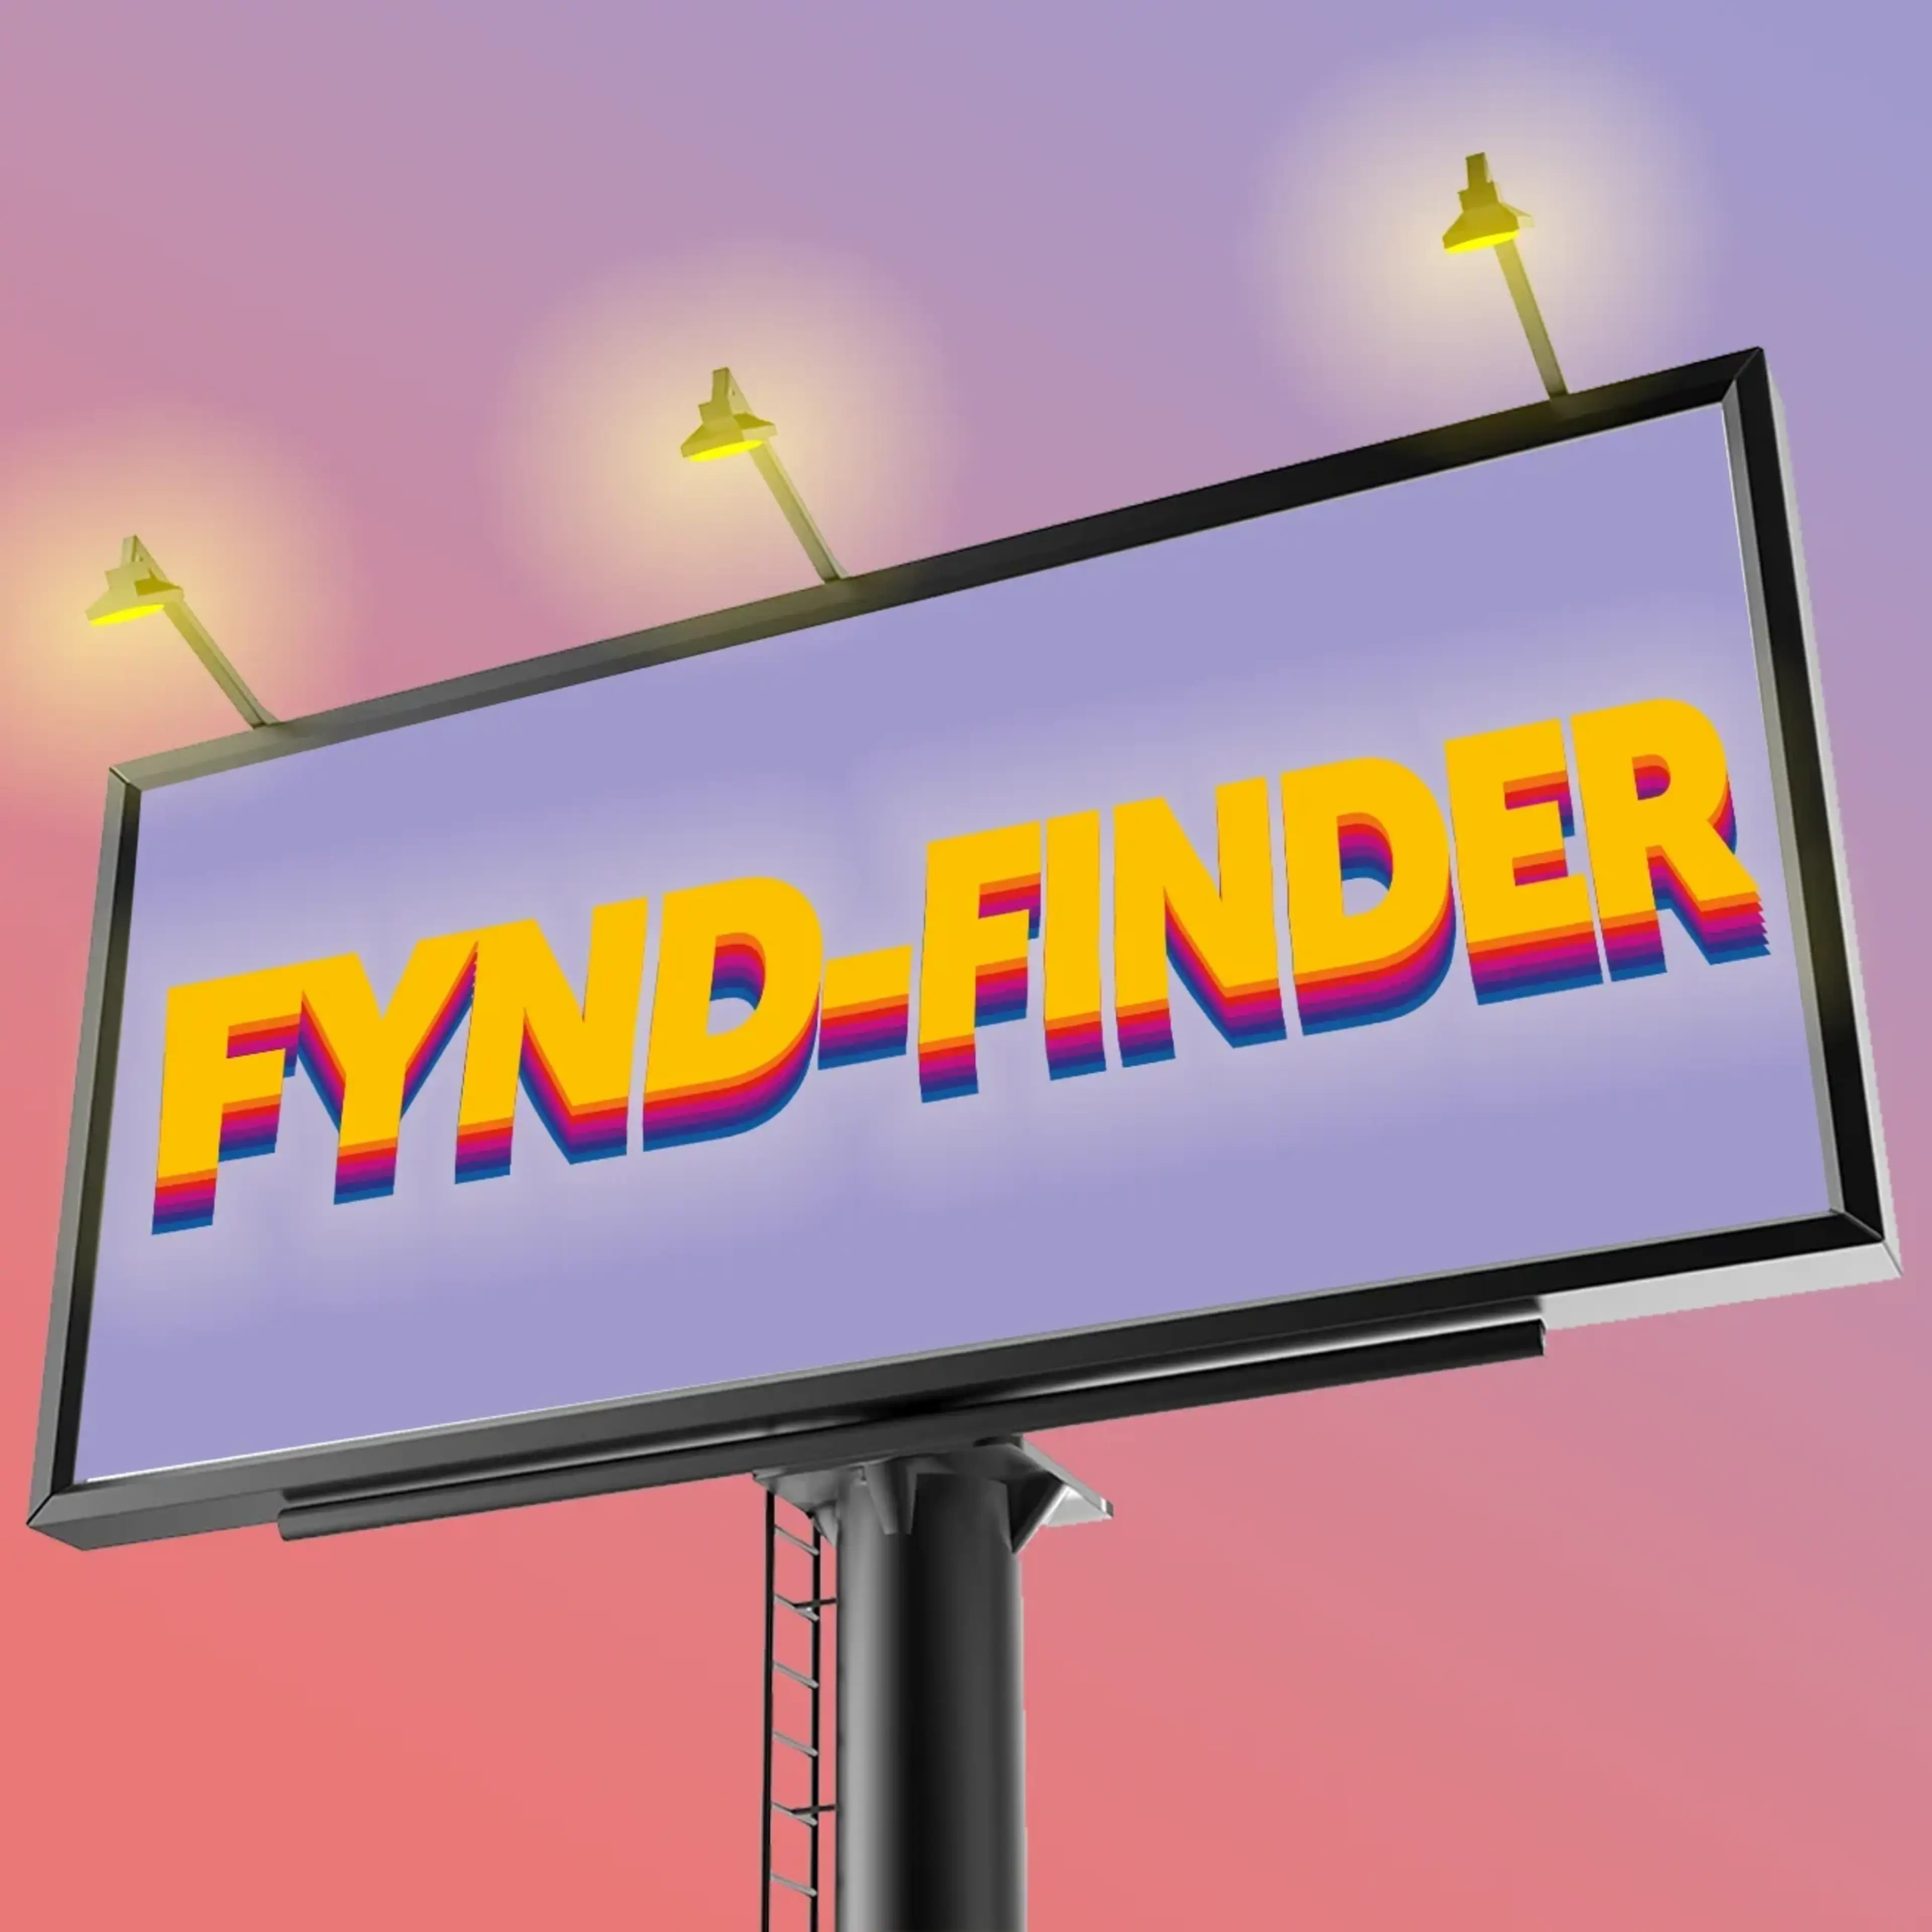 Fynd-finder image